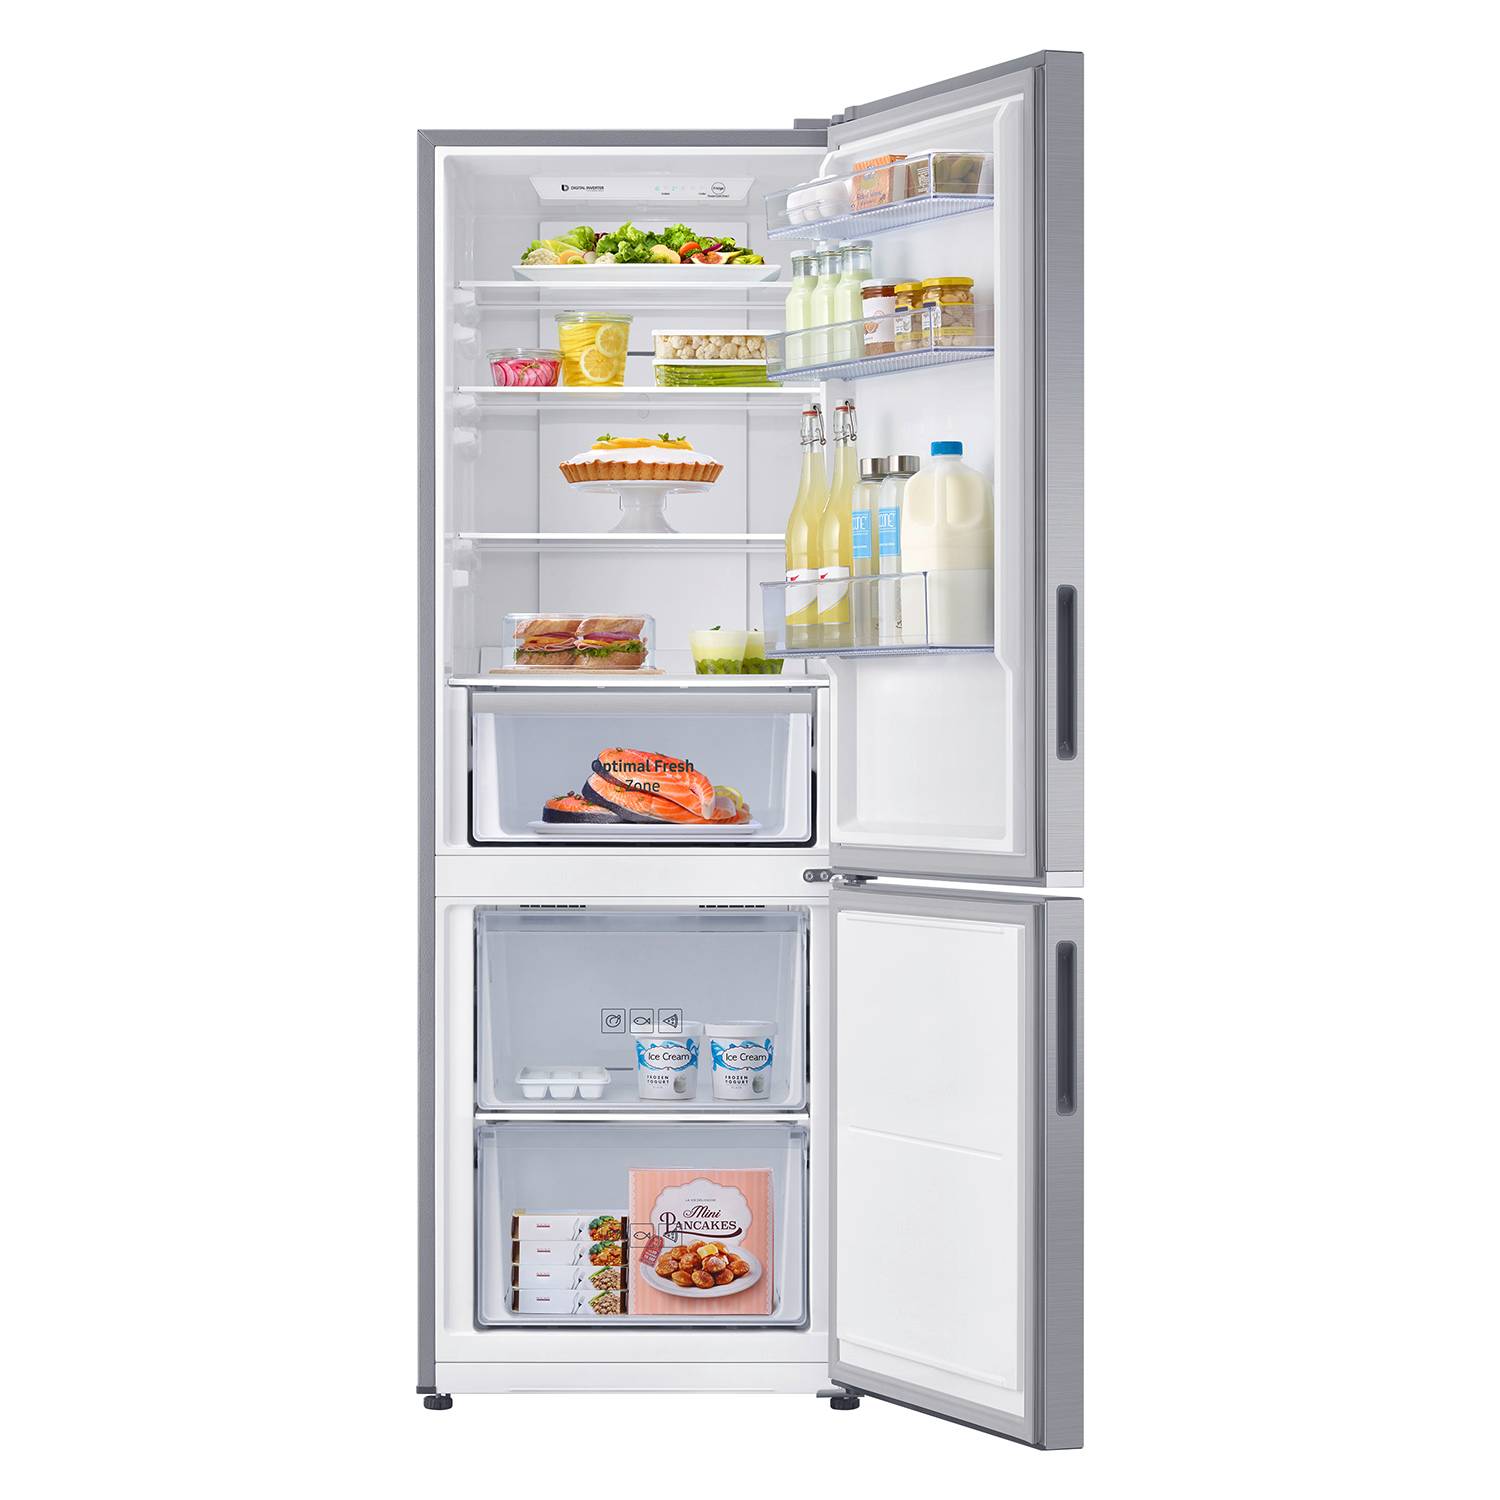 Cuál es el mejor refrigerador del mercado? - La Tercera